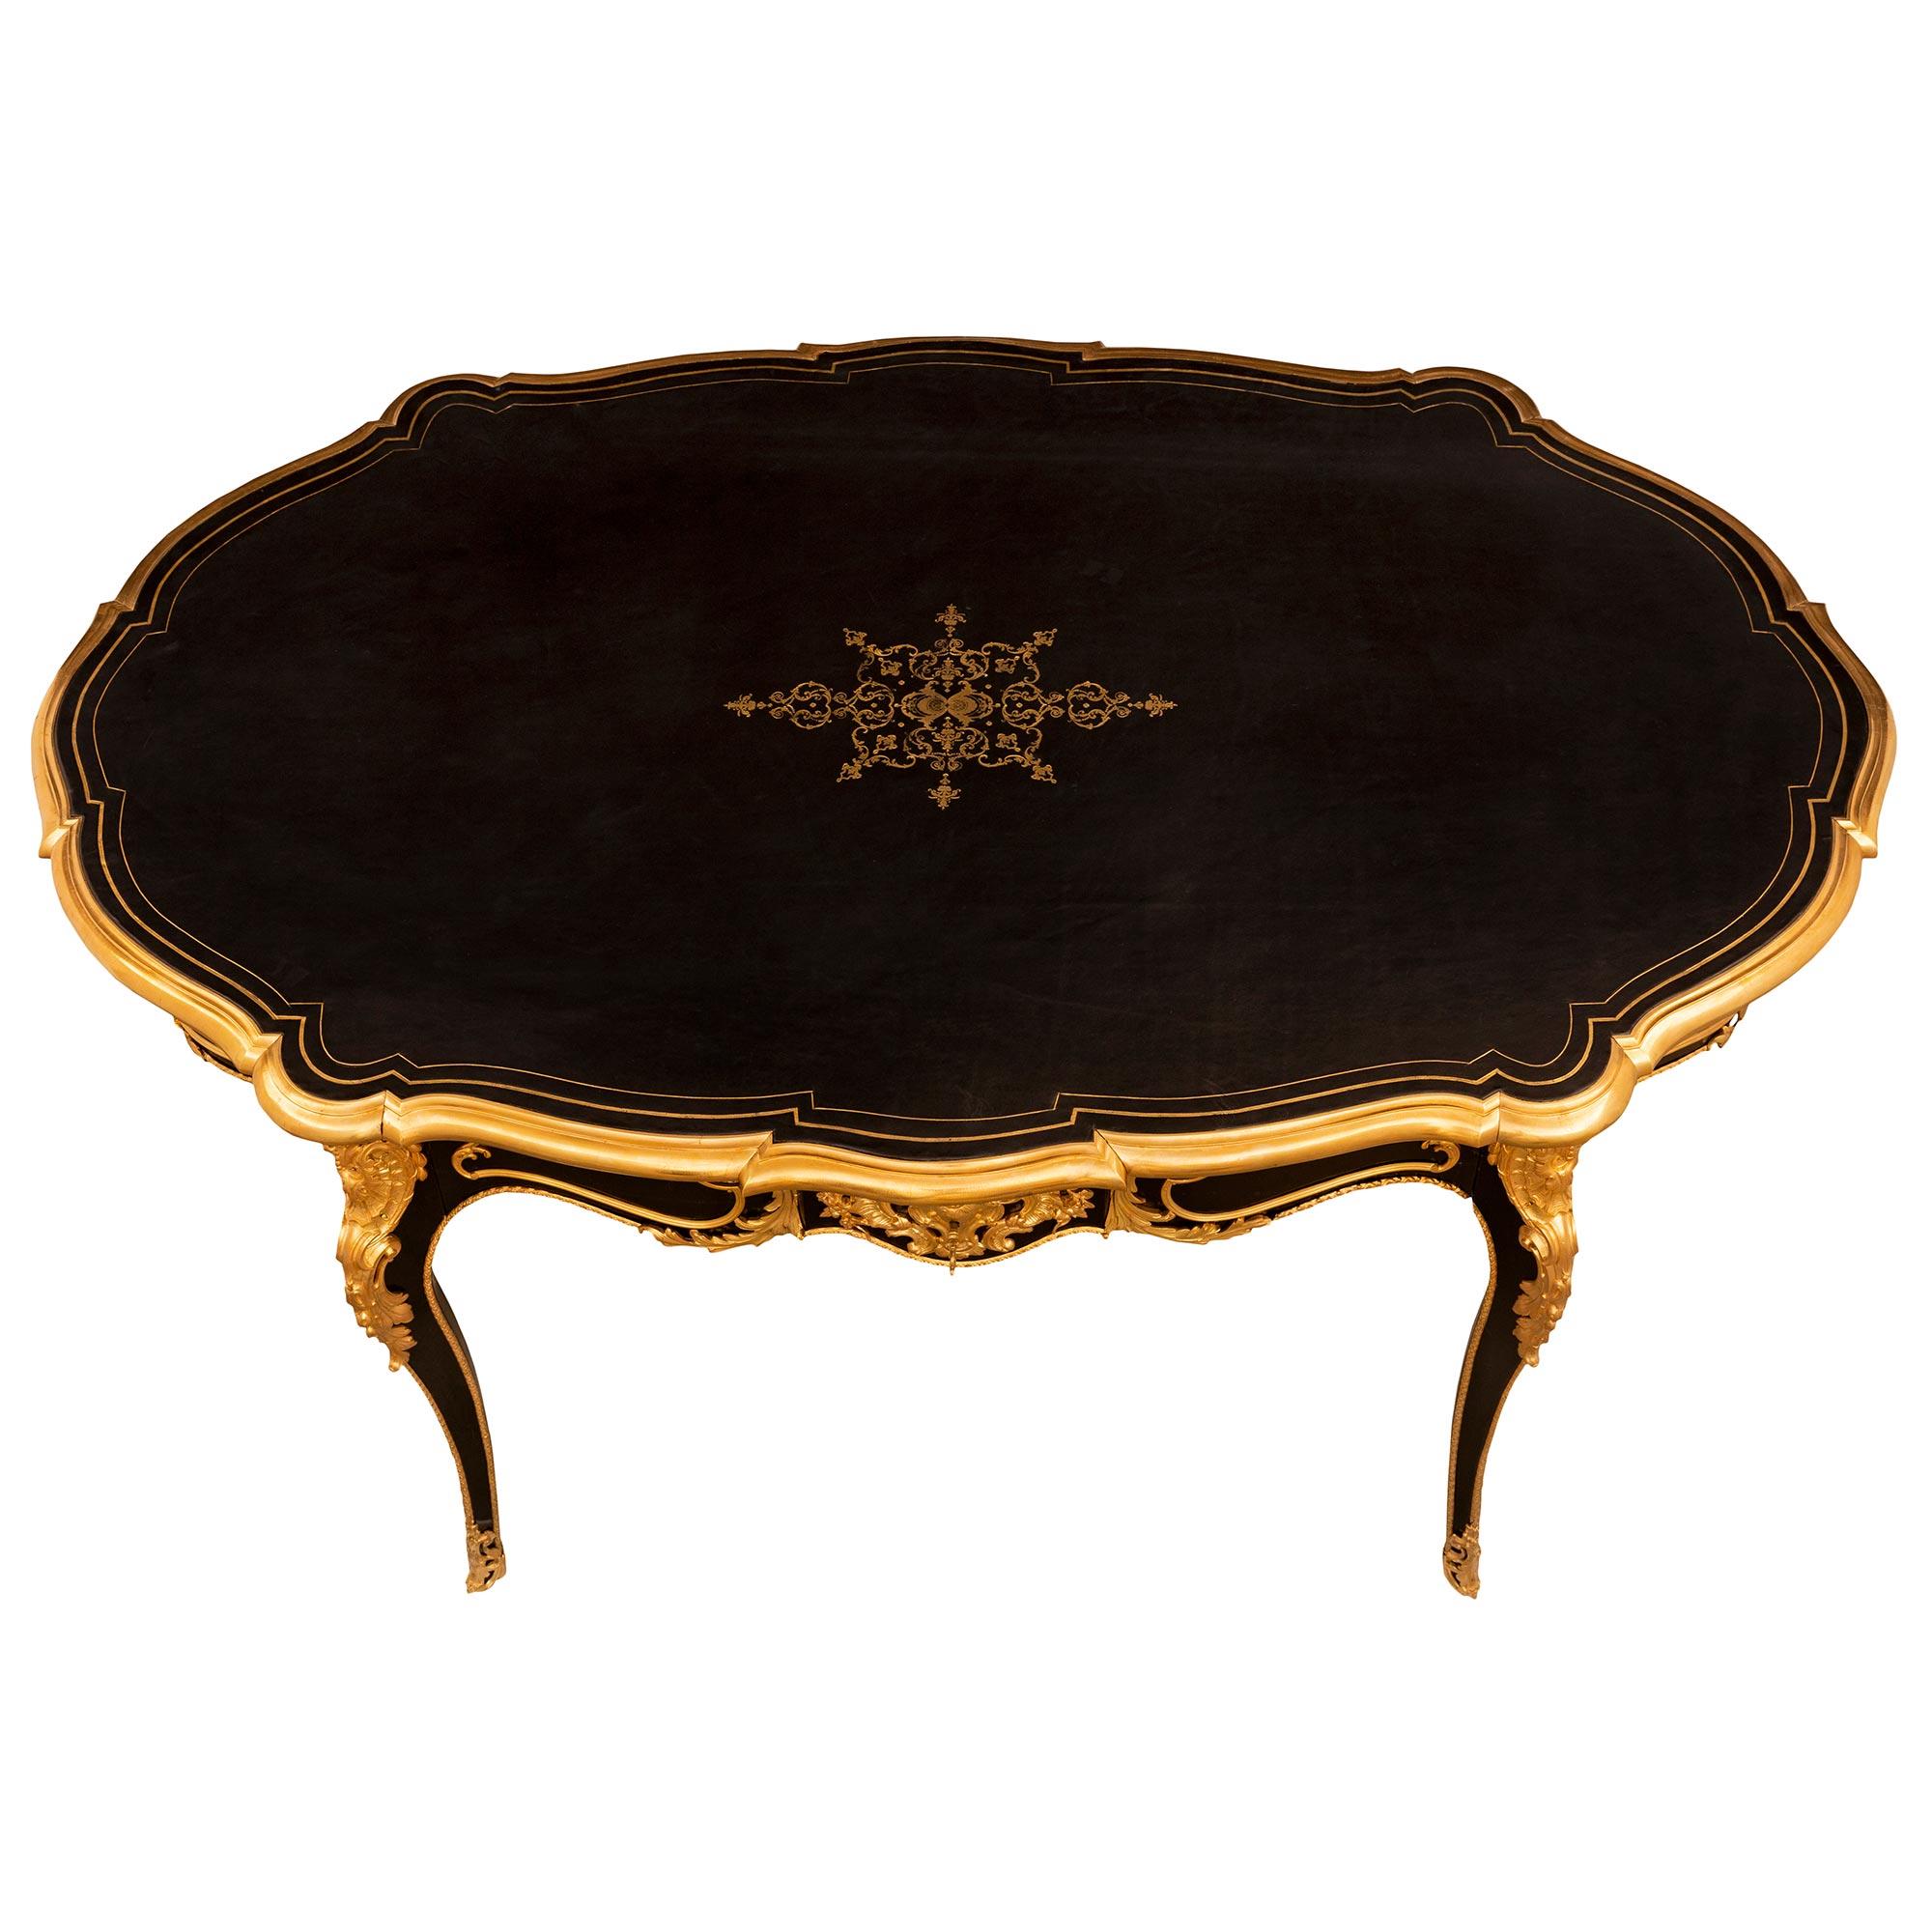 Une très élégante table/bureau de très haute qualité, d'époque Louis XV et Napoléon III, en ébène et bronze doré. La table est surélevée par des pieds cabriole très fins avec d'exquis sabots en bronze doré percés et ajustés avec des chutes